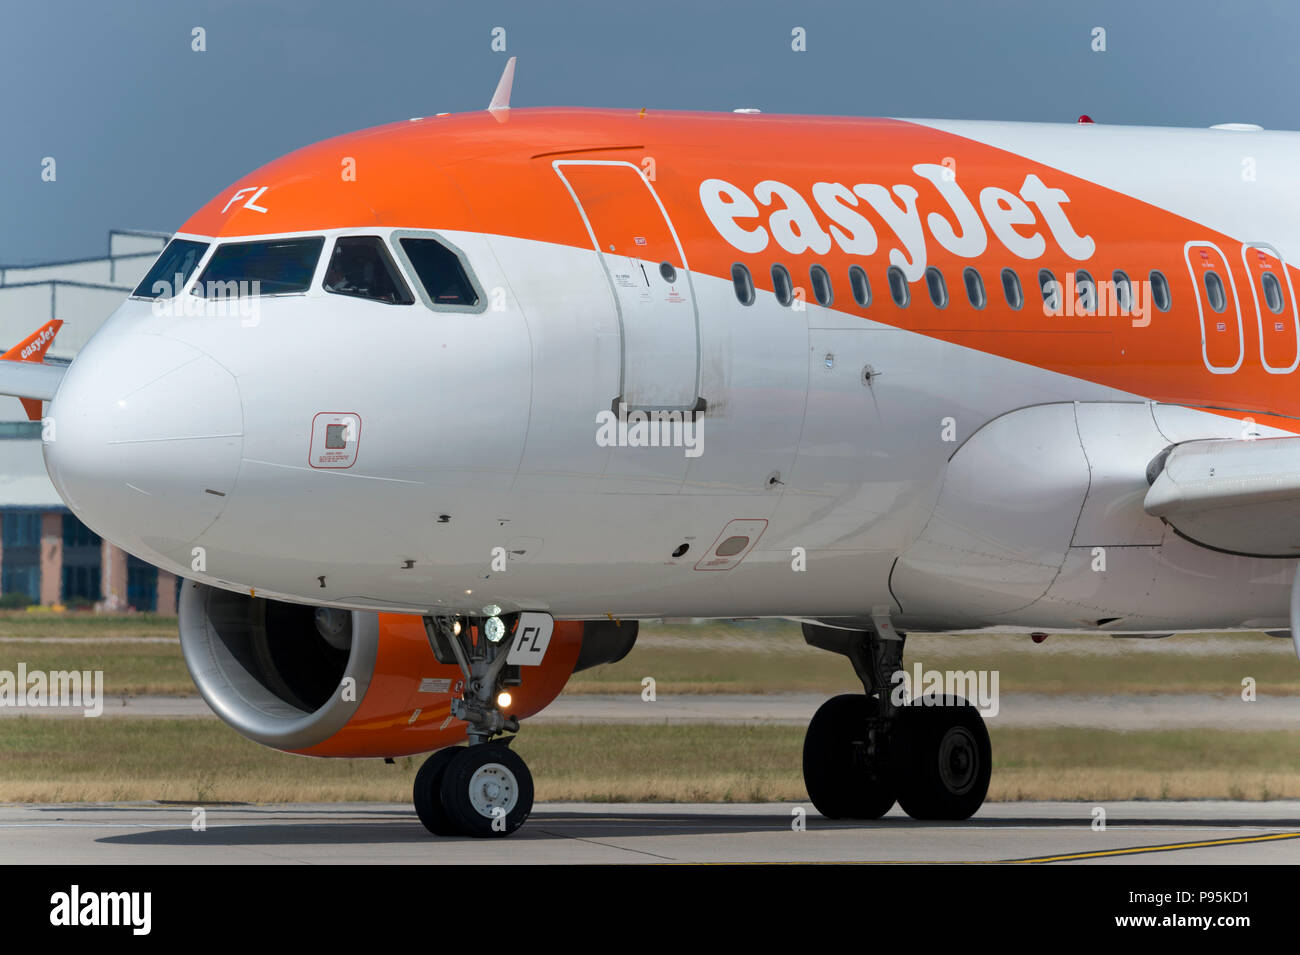 Un Airbus A319 d'Easyjet taxis le long de la piste à l'aéroport de Manchester tout en se préparant à décoller. Banque D'Images